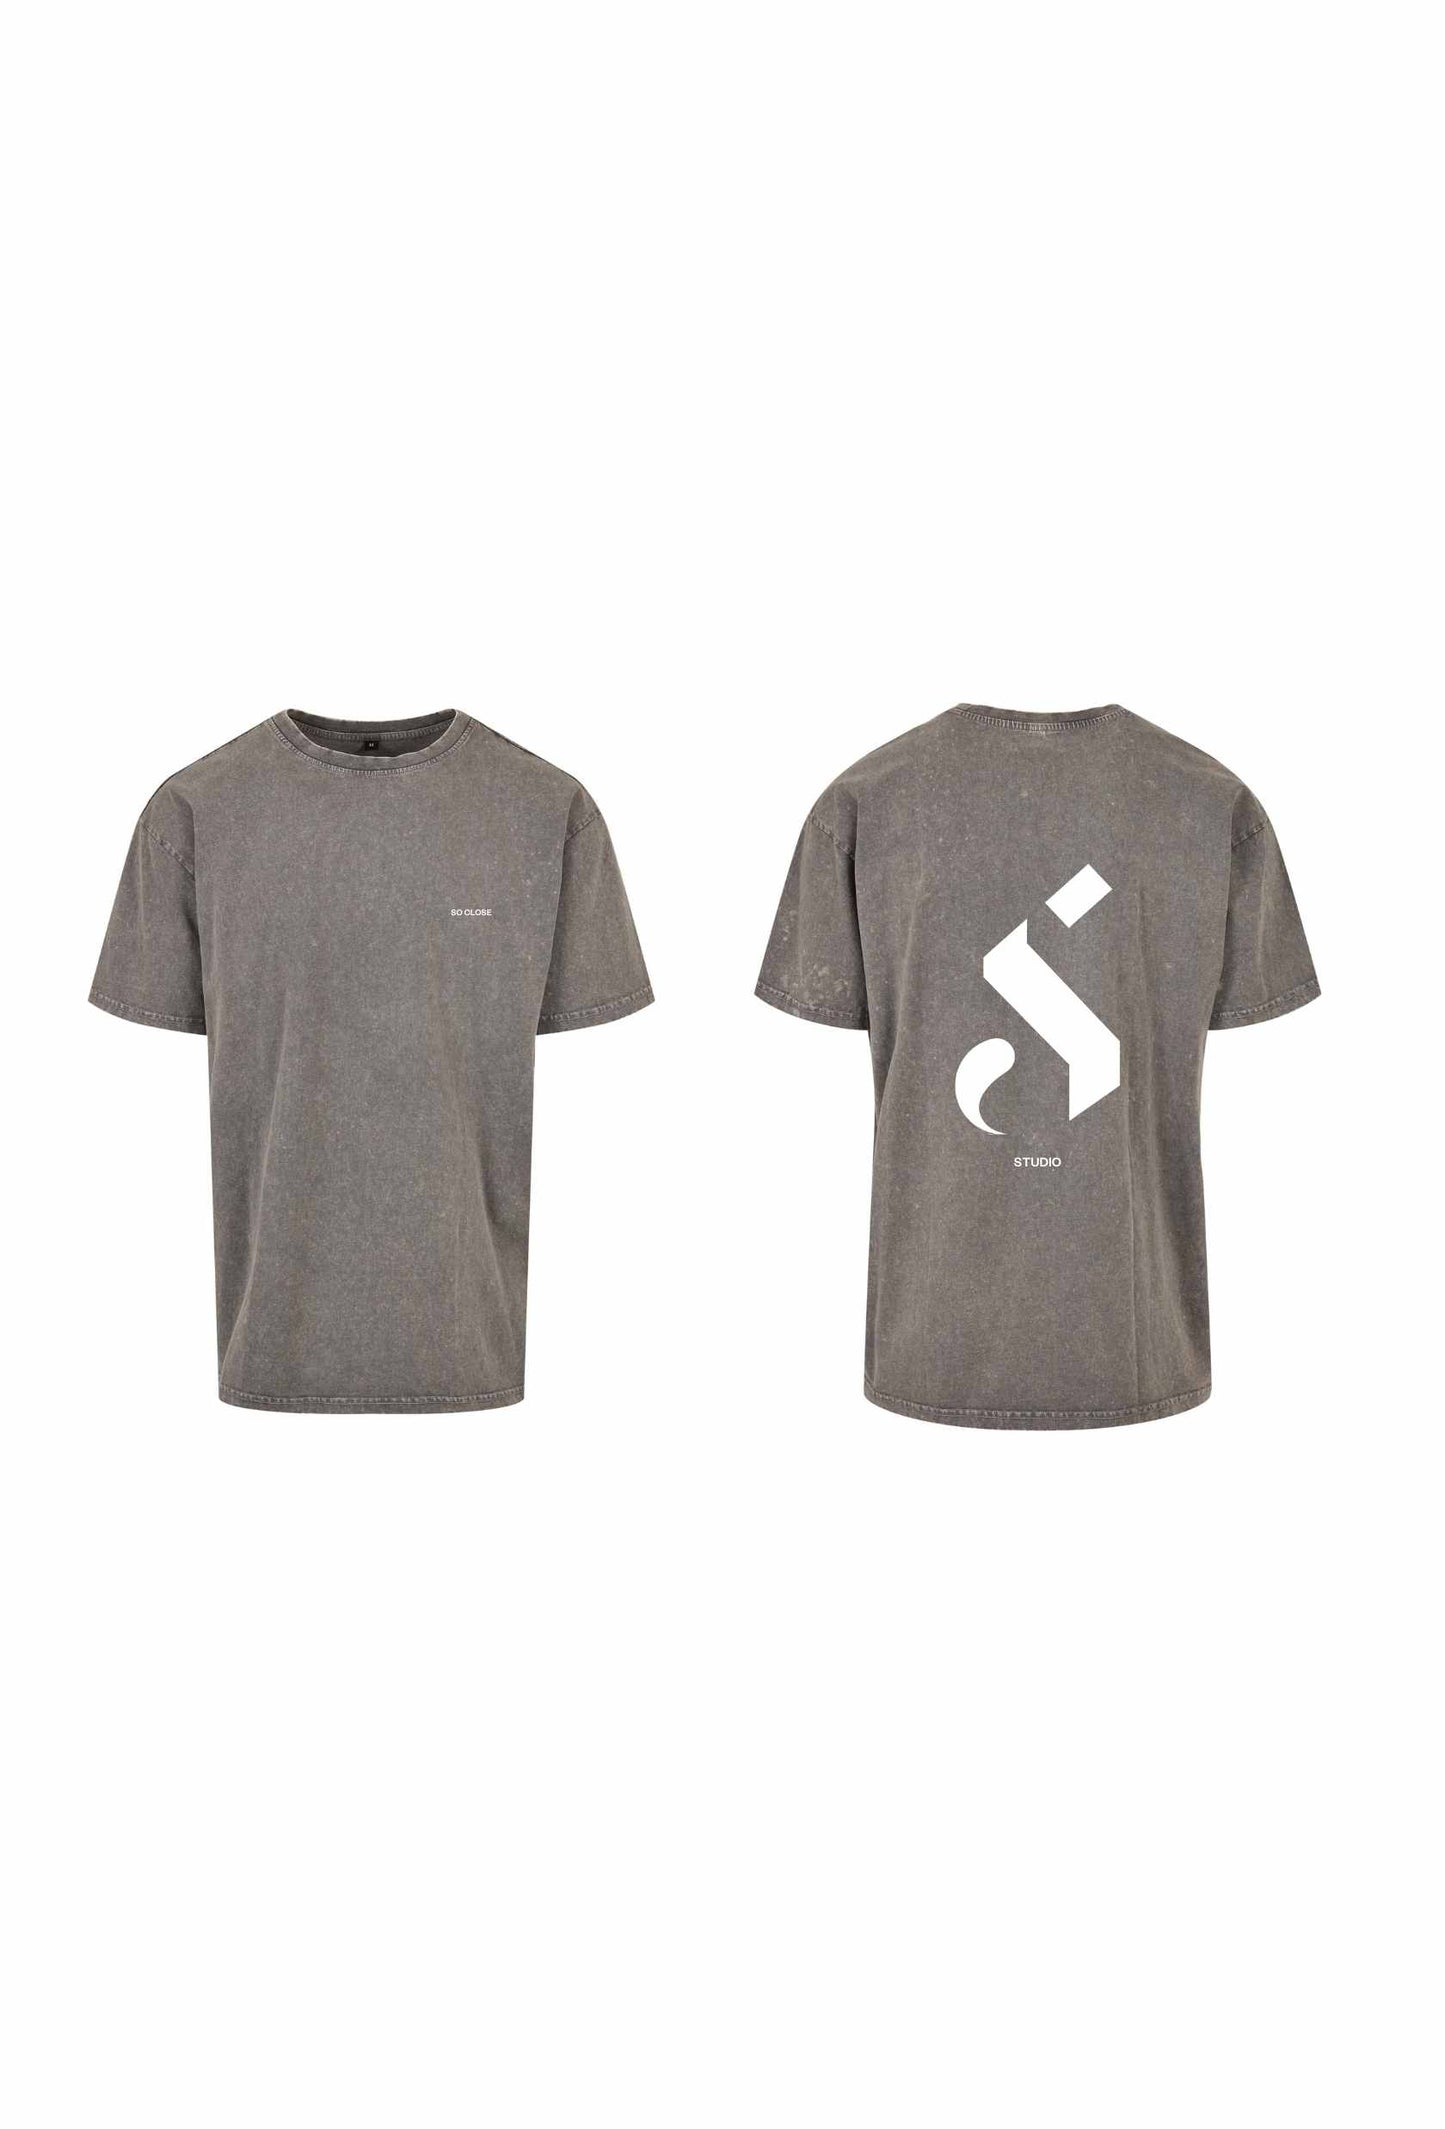 Lightweight Asfalt t-shirt - "S"